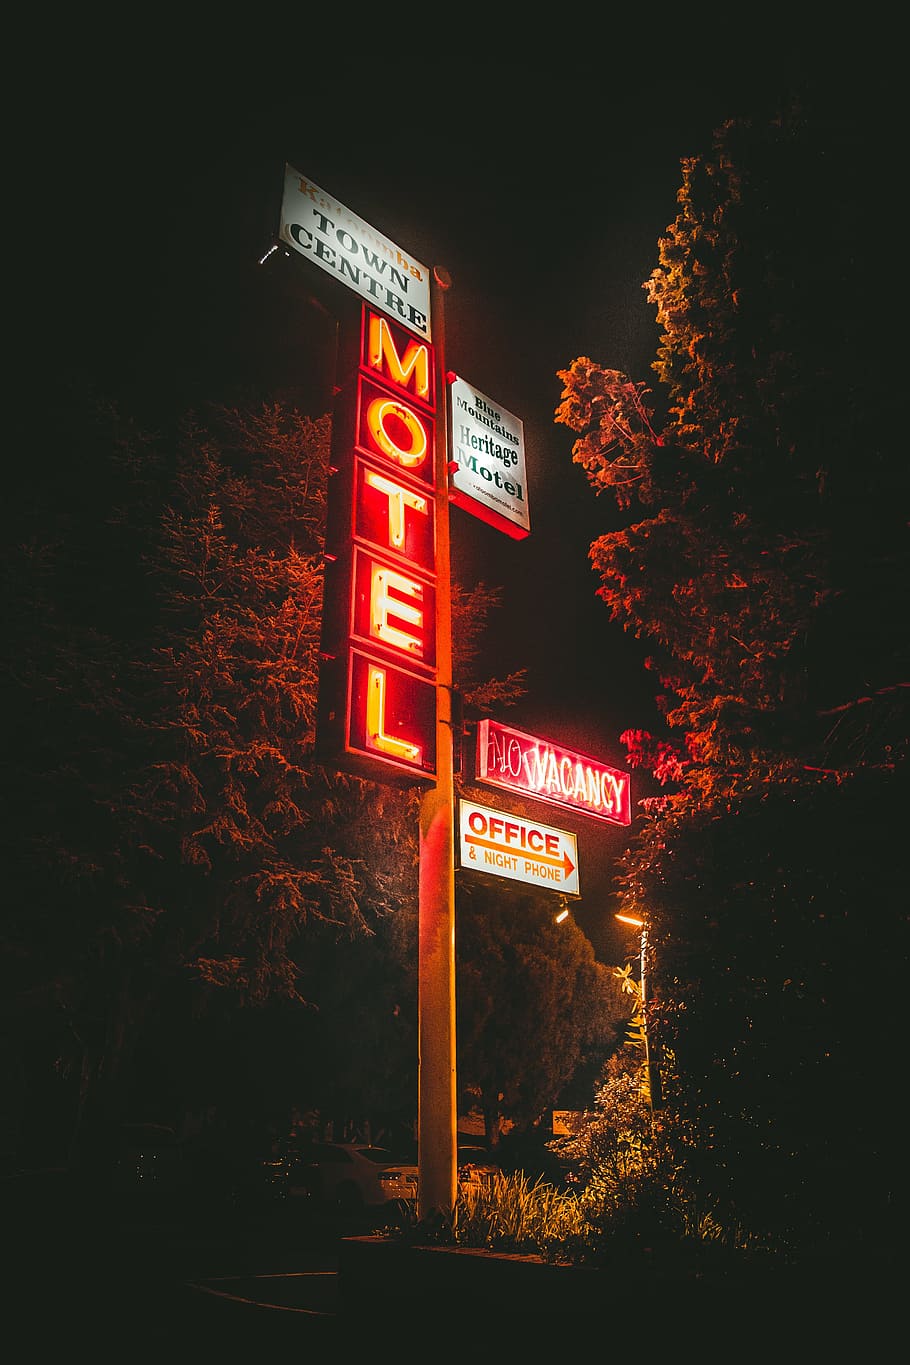 iluminado, señalización de motel, noche, árboles, poste, motel, señalización, luces, oscuro, hierba